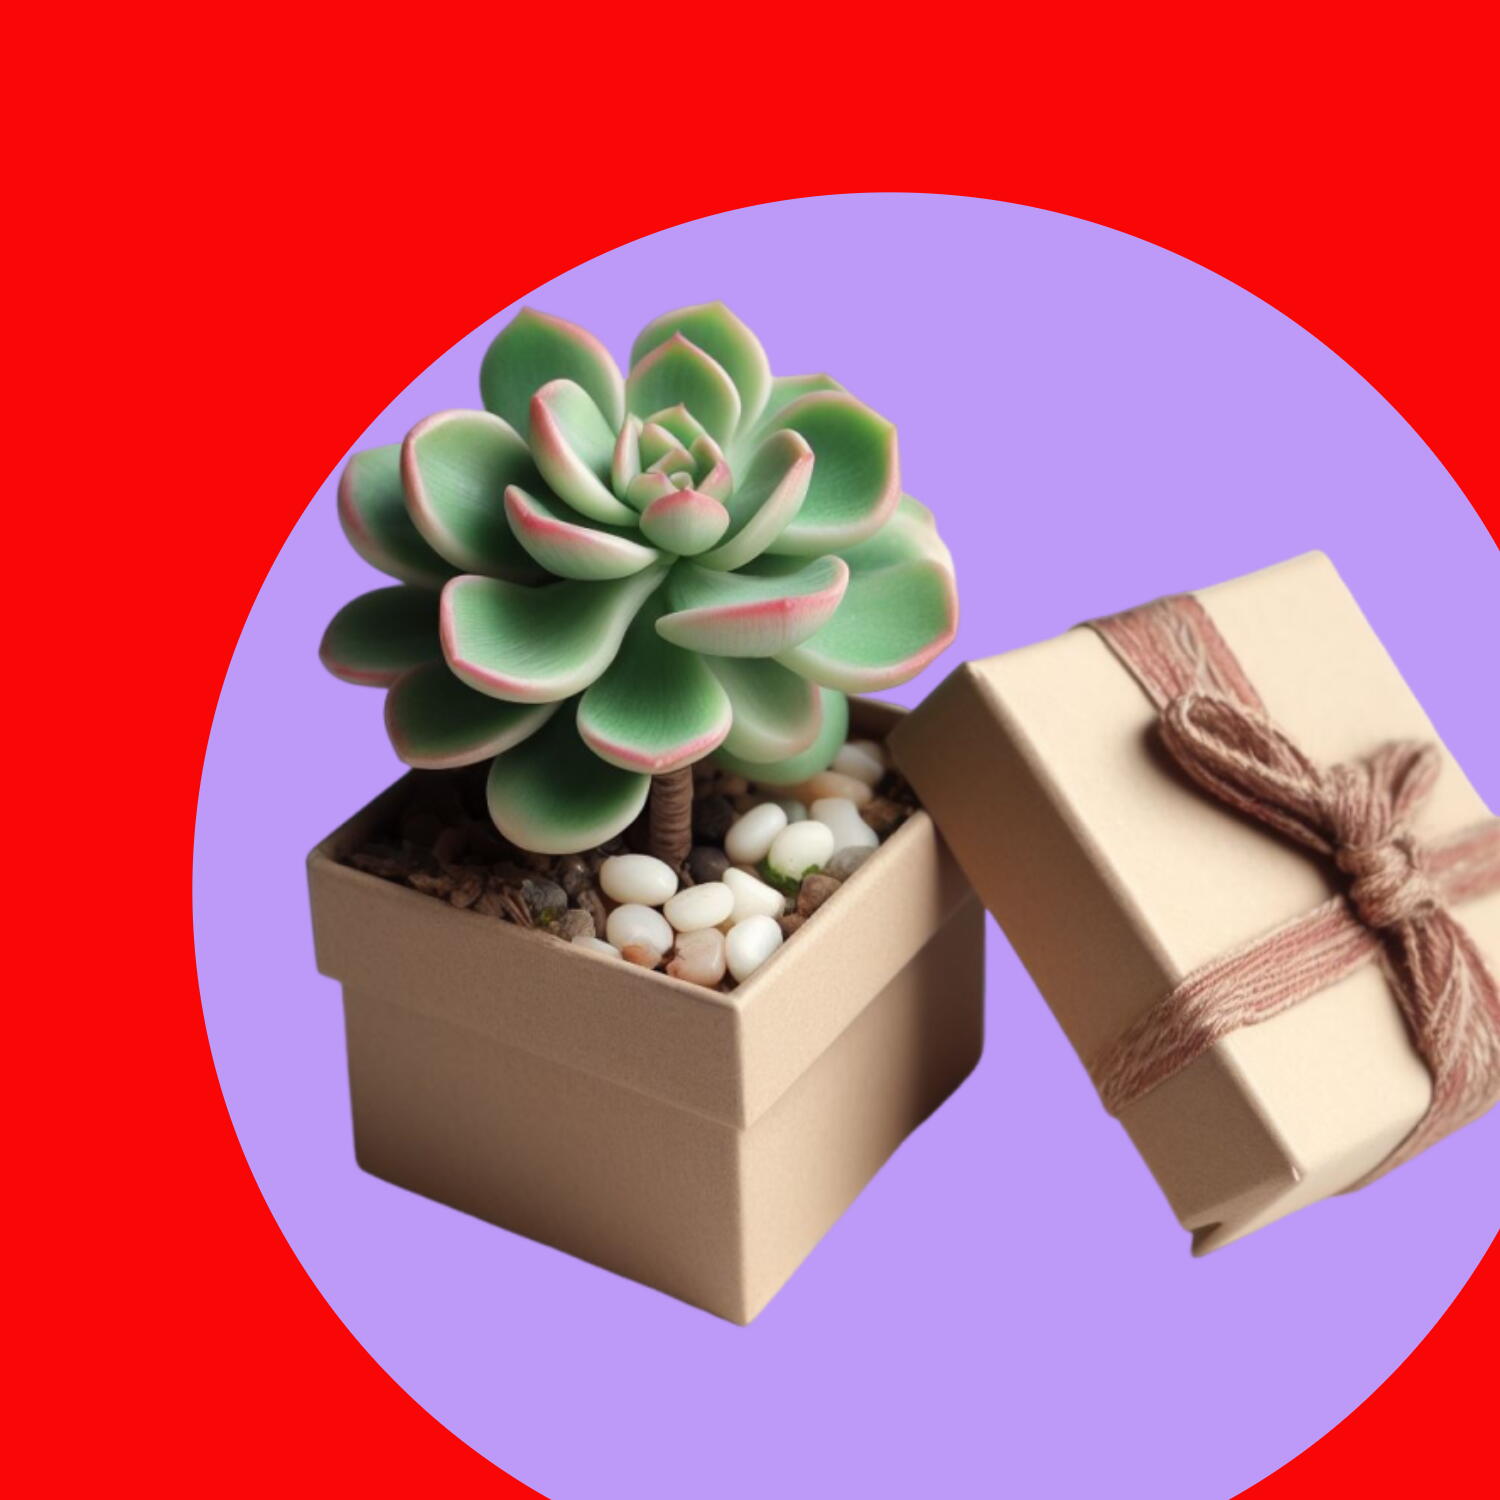 Planta jade dentro de uma caixa de presente sobre fundo vermelho e roxo